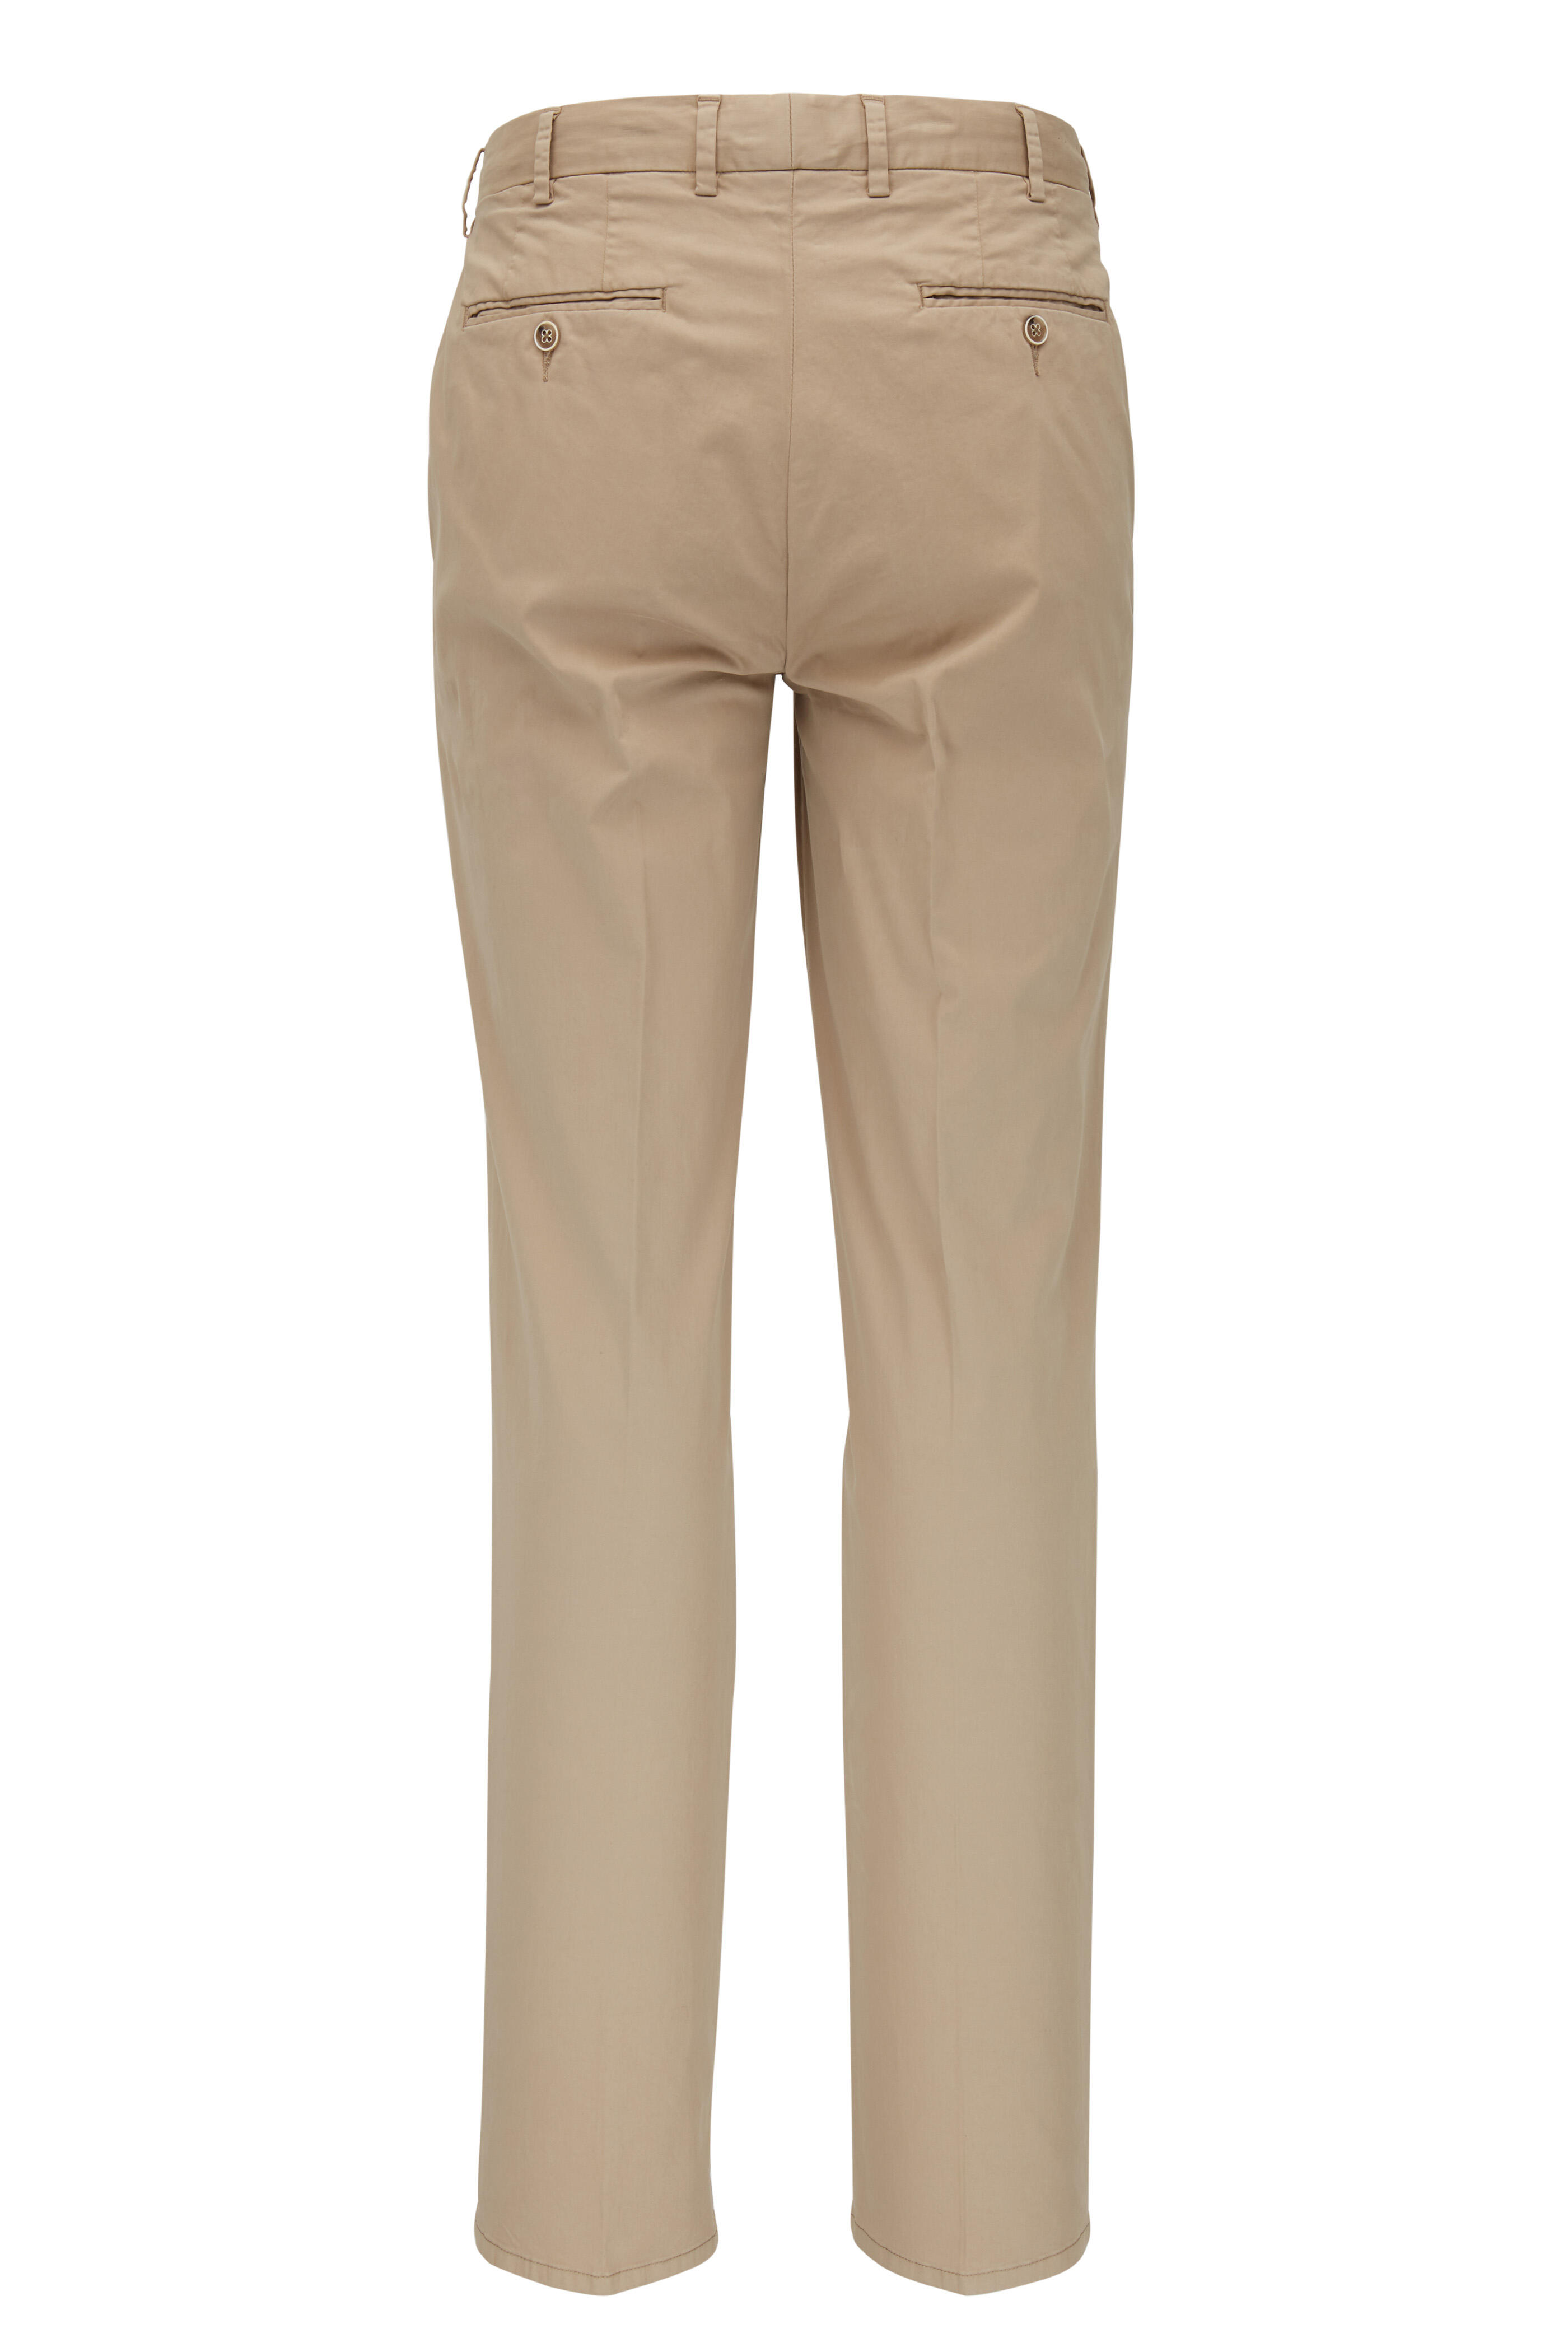 Peter Millar - Khaki Cotton & Silk Flat Front Pant